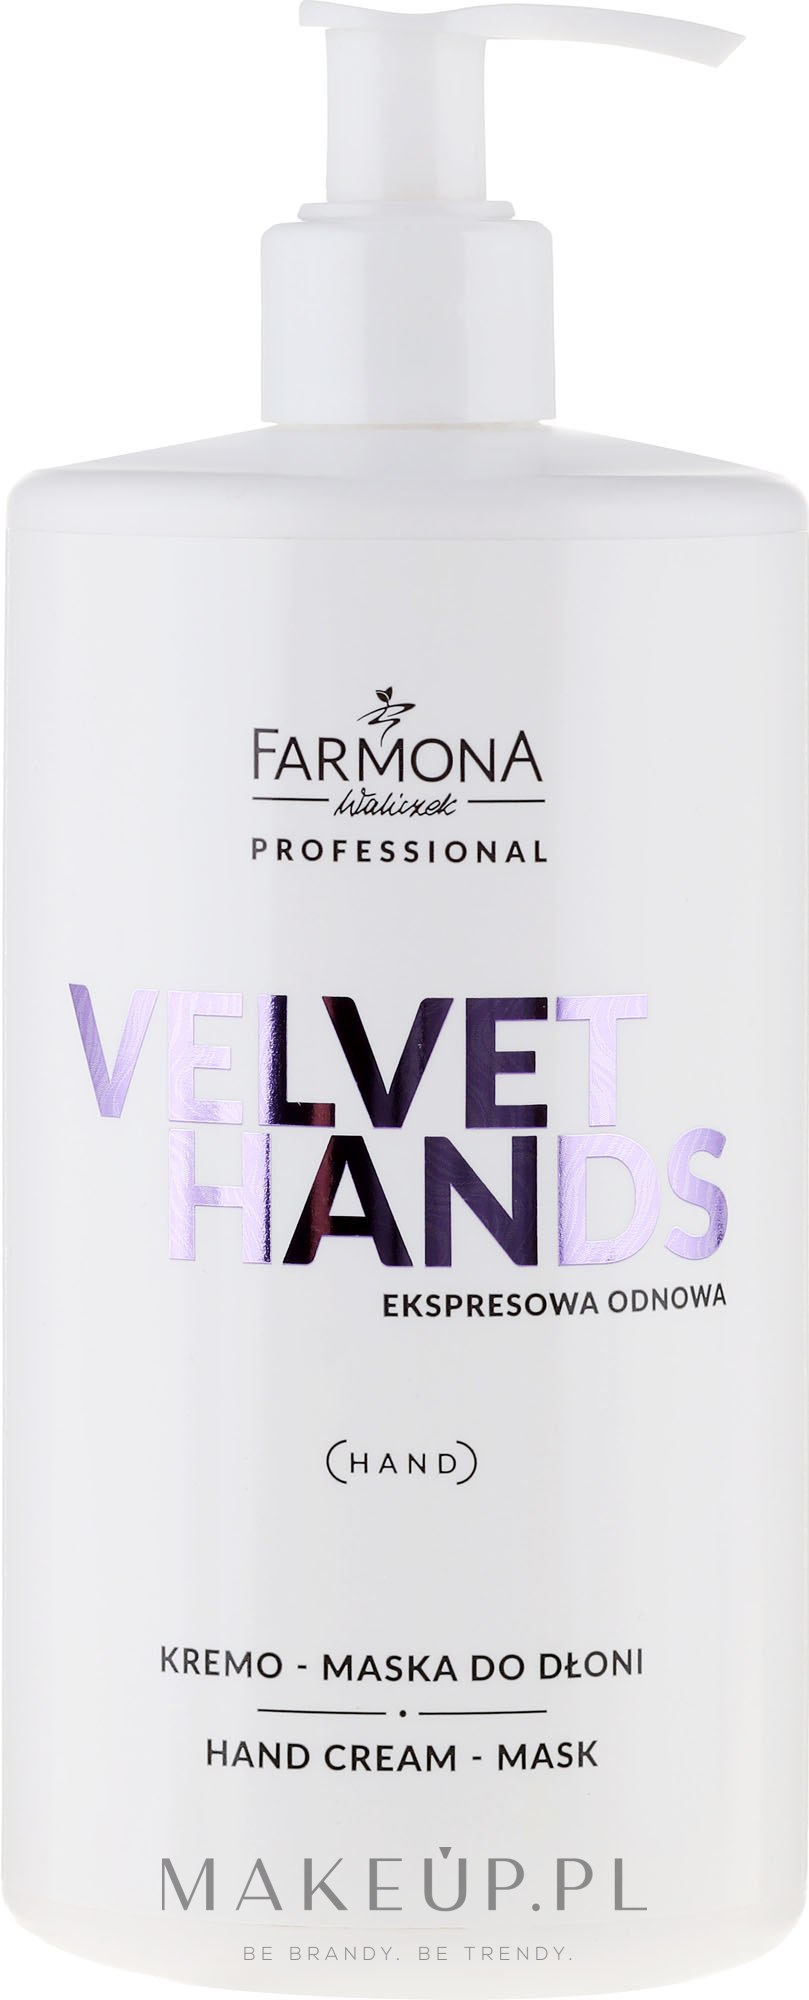 Krem-maska do dłoni z lilią Ekspresowa odnowa - Farmona Professional Velvet Hands — Zdjęcie 500 ml